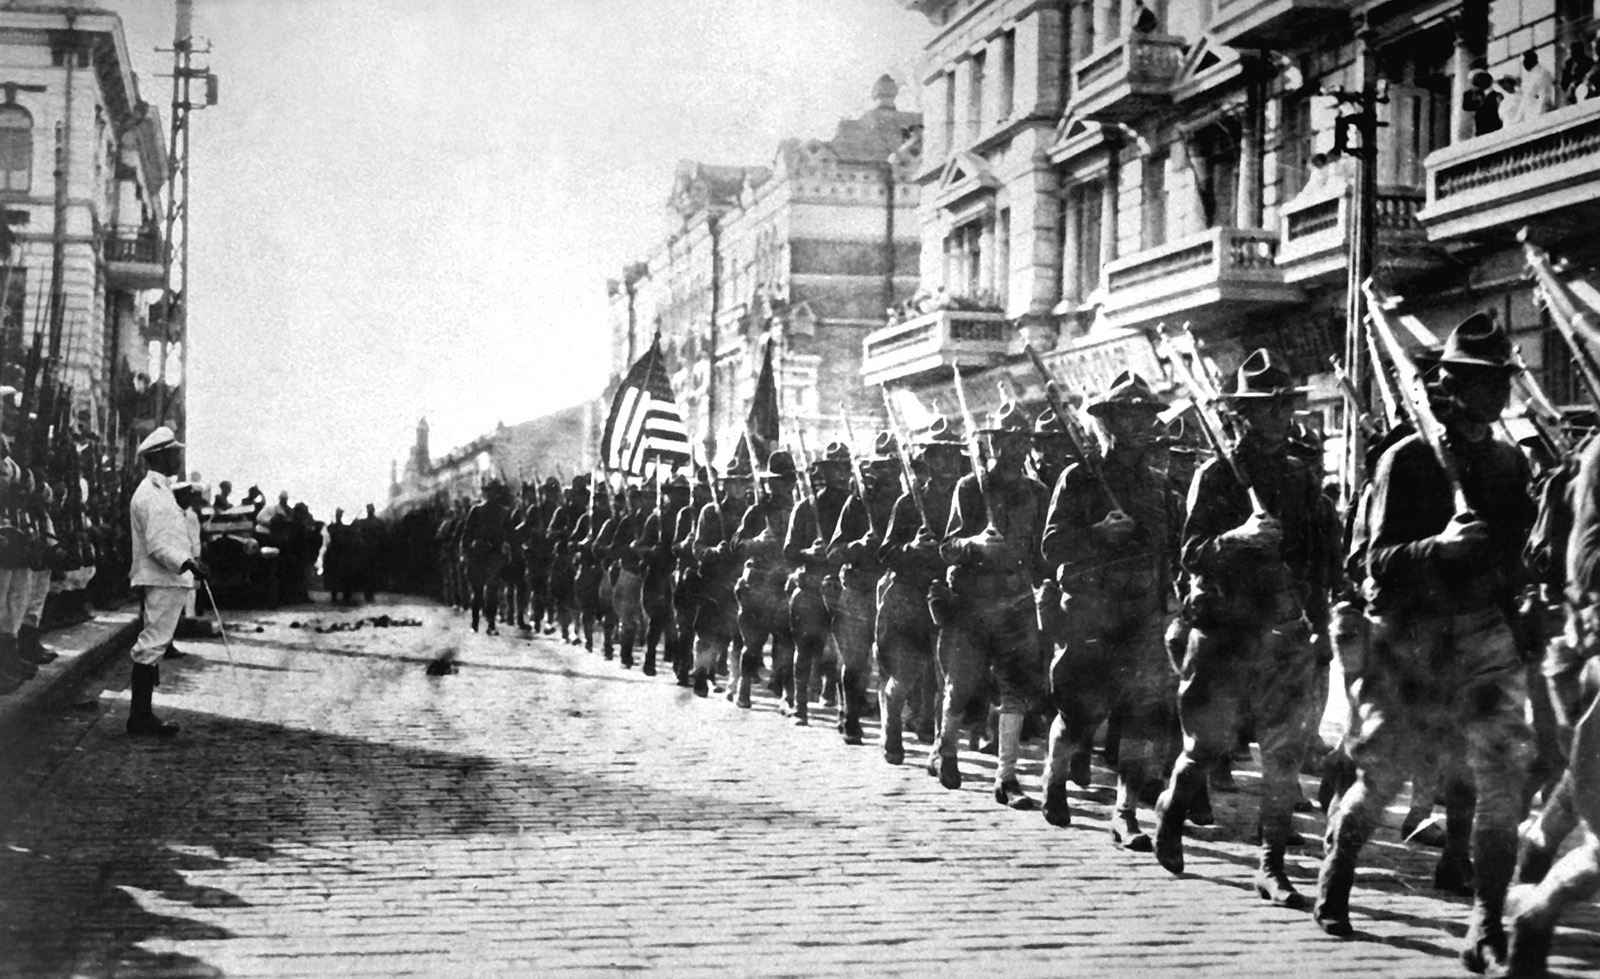 1917 U.S. enters World War I